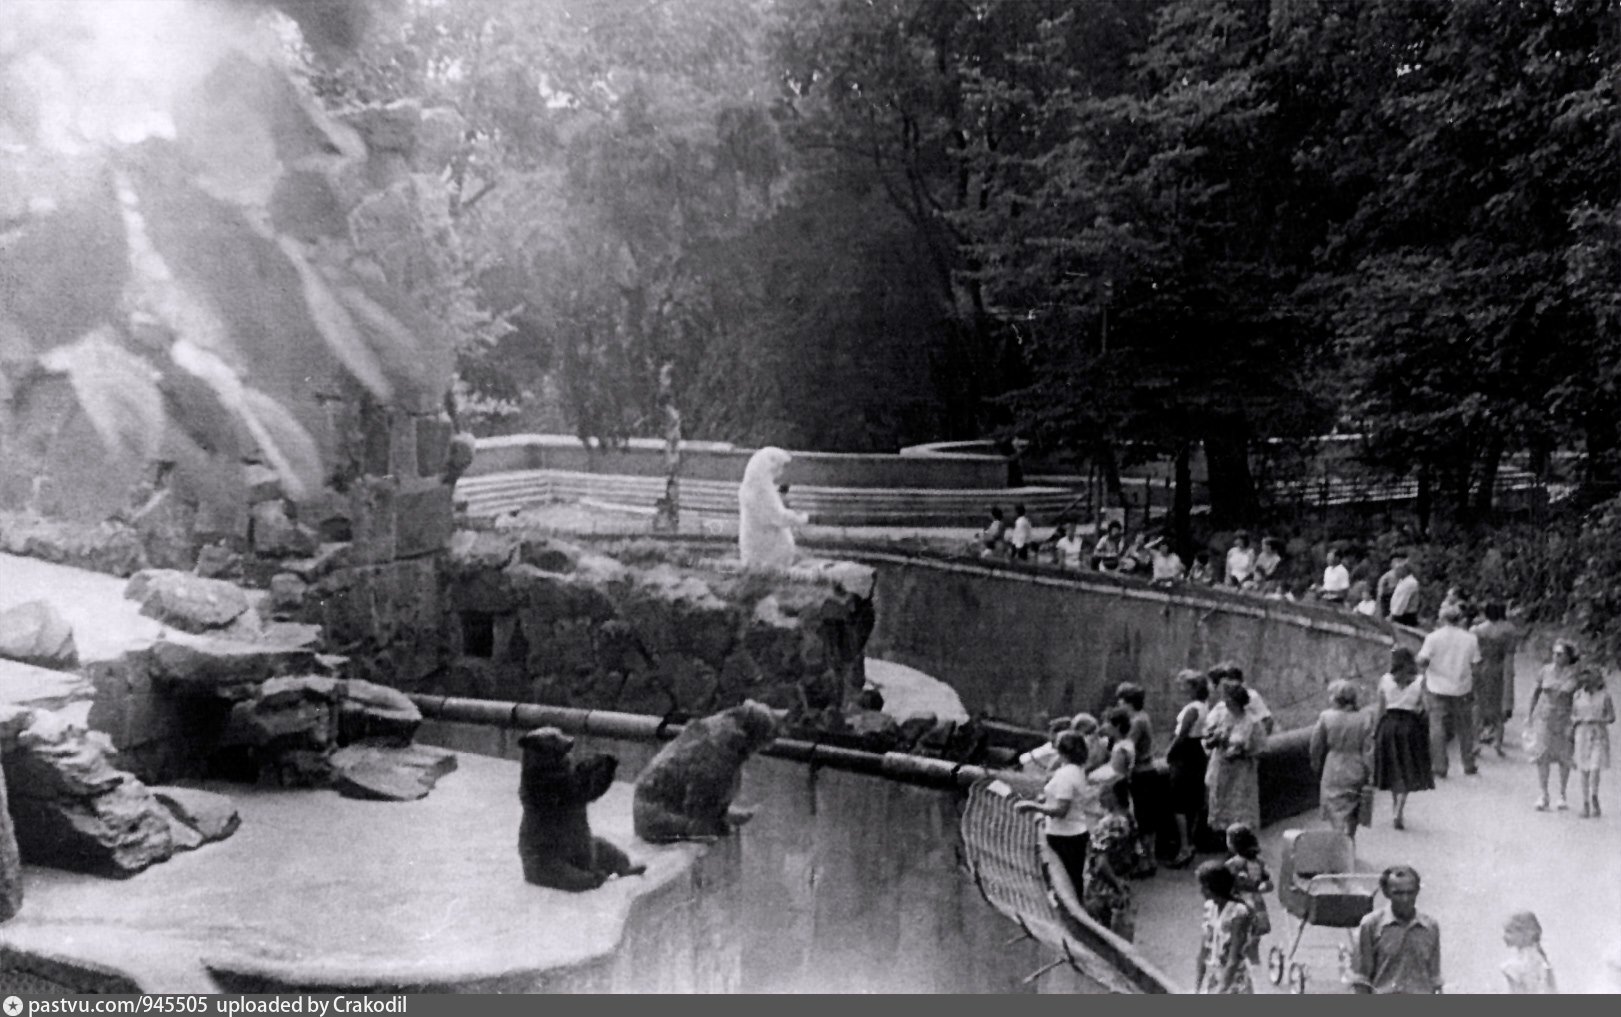 зоопарк калининград старые